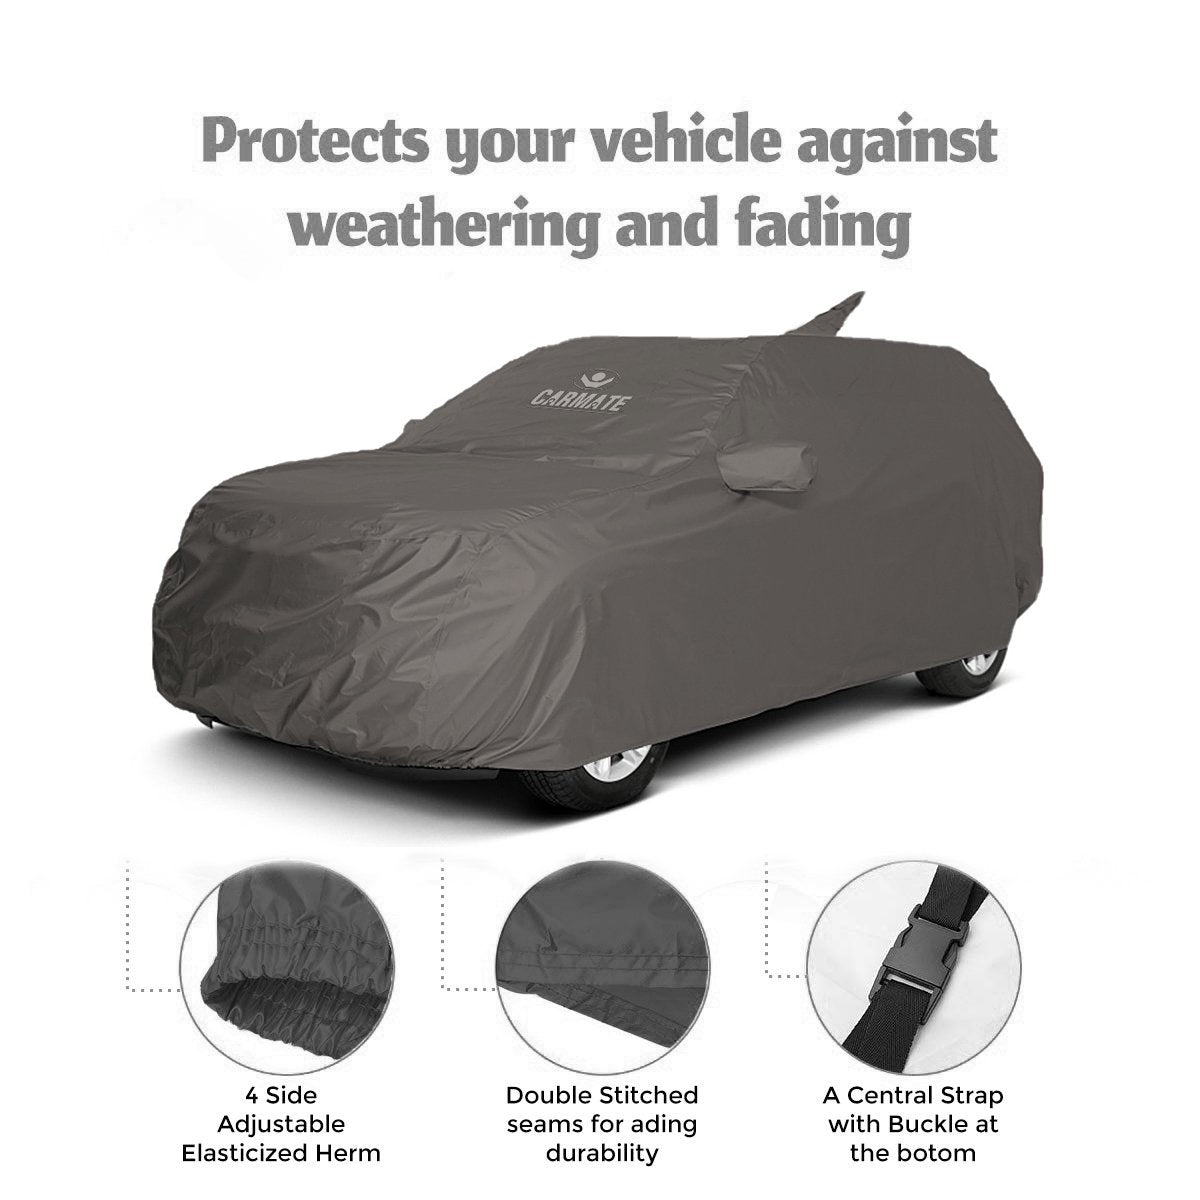 Carmate Car Body Cover 100% Waterproof Pride (Grey) for Hyundai - Eon - CARMATE®